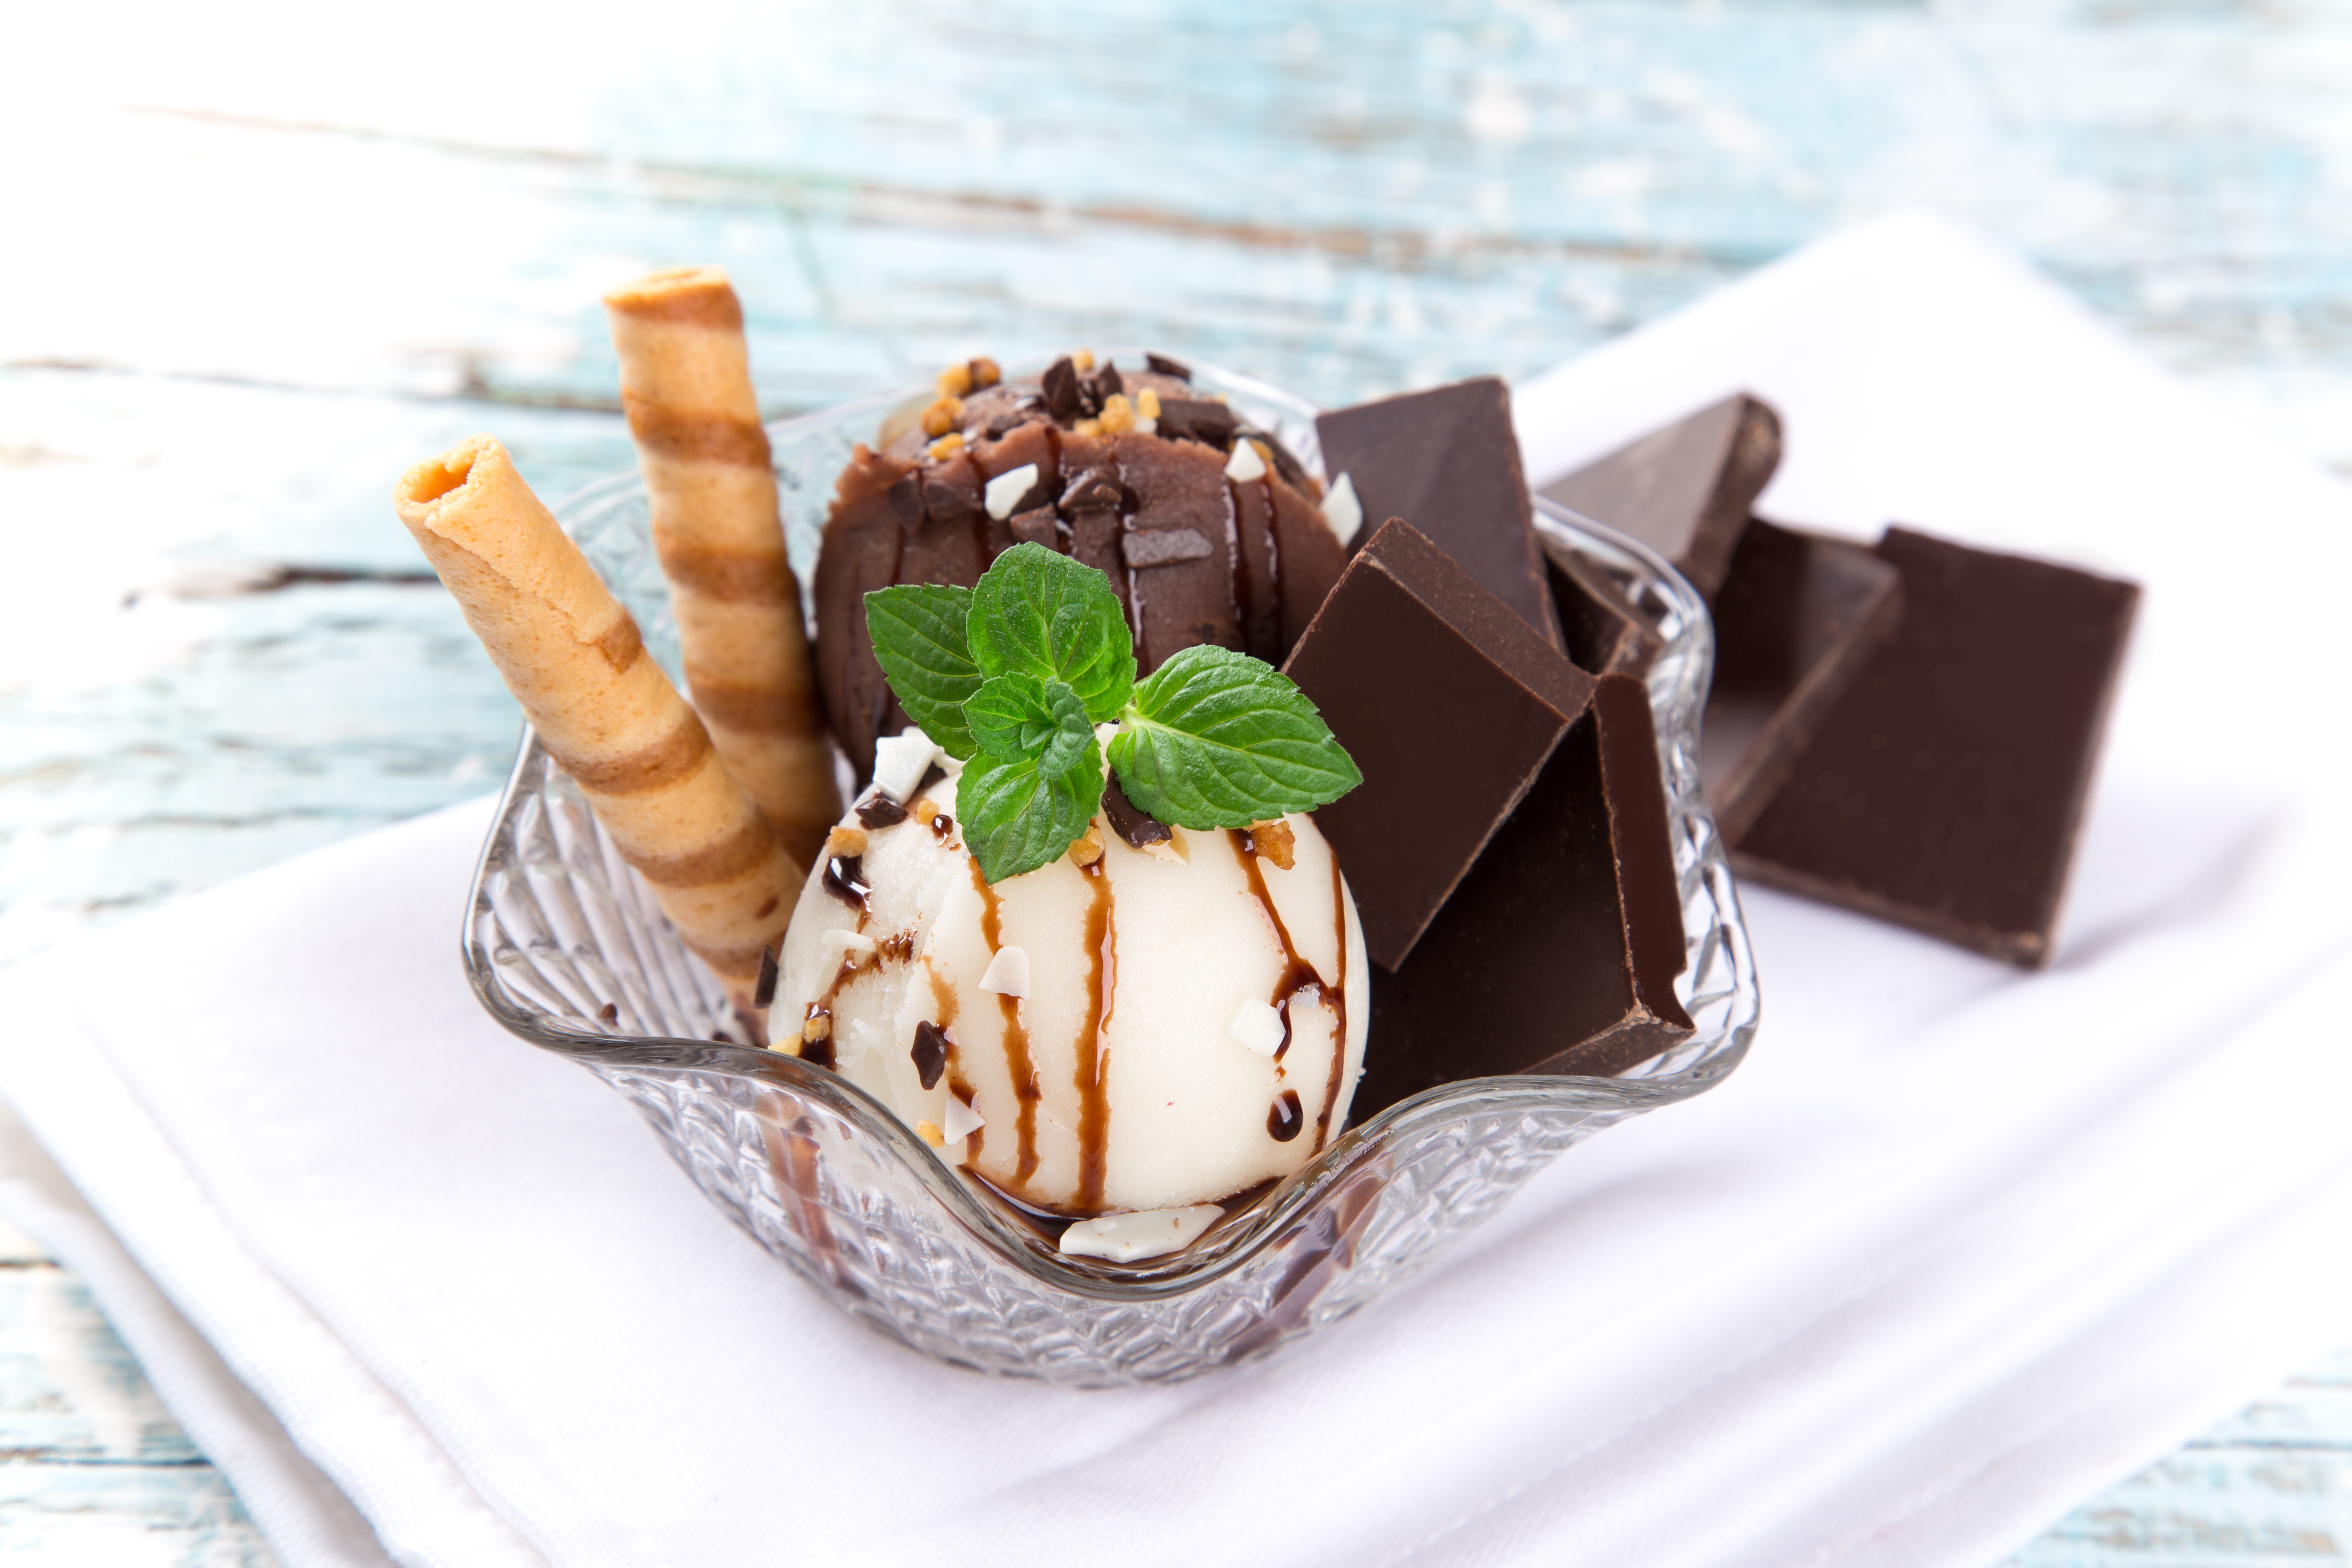 Ice Cream Chocolate Dessert Mint 5472x3648